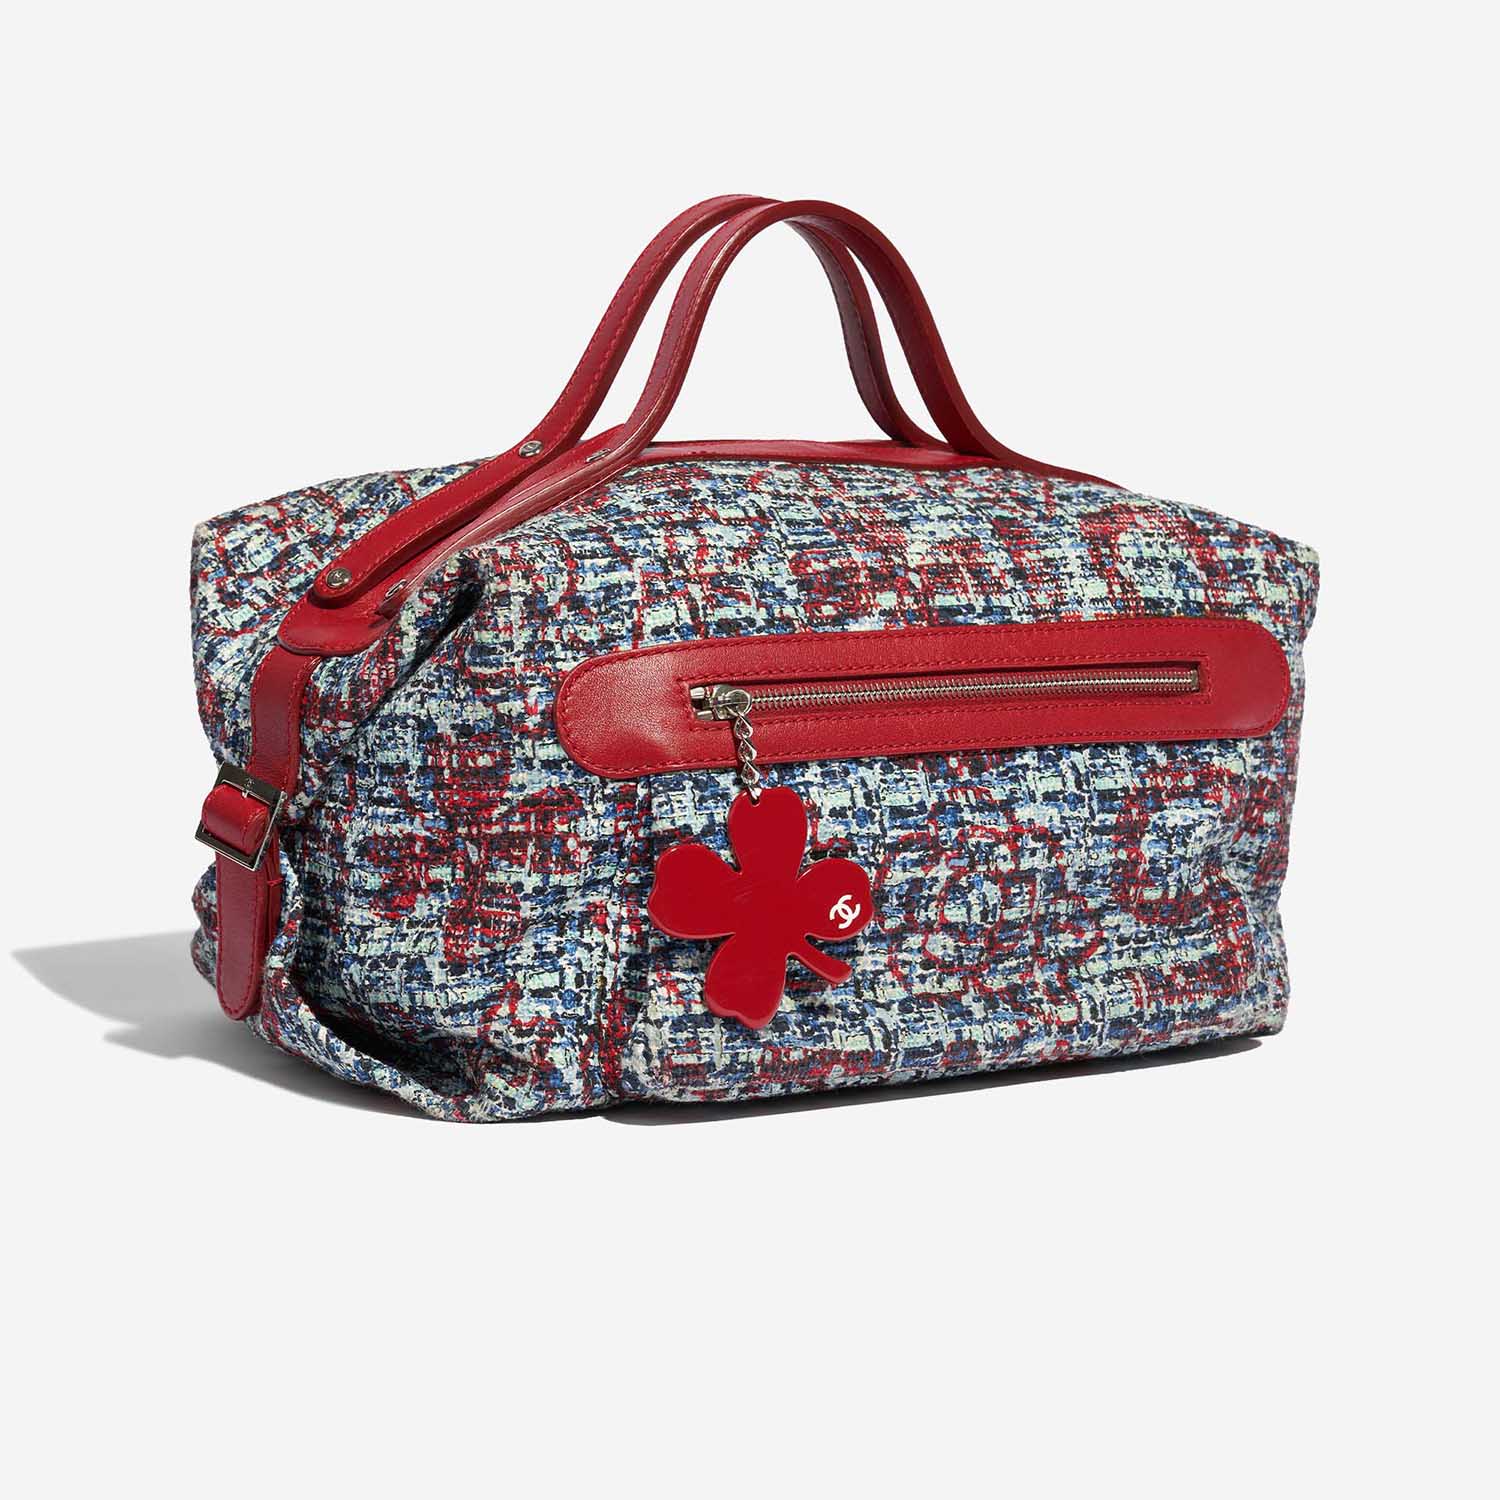 Pre-owned Chanel bag Duffle Bag Tweed Mixed Multicolour Side Front | Verkaufen Sie Ihre Designer-Tasche auf Saclab.com